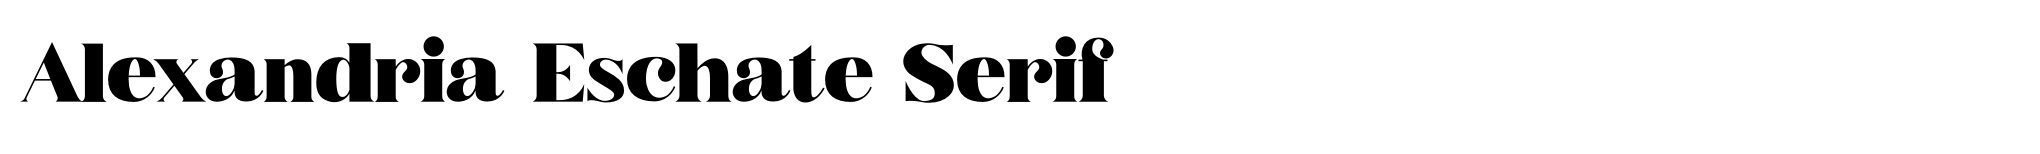 Alexandria Eschate Serif image